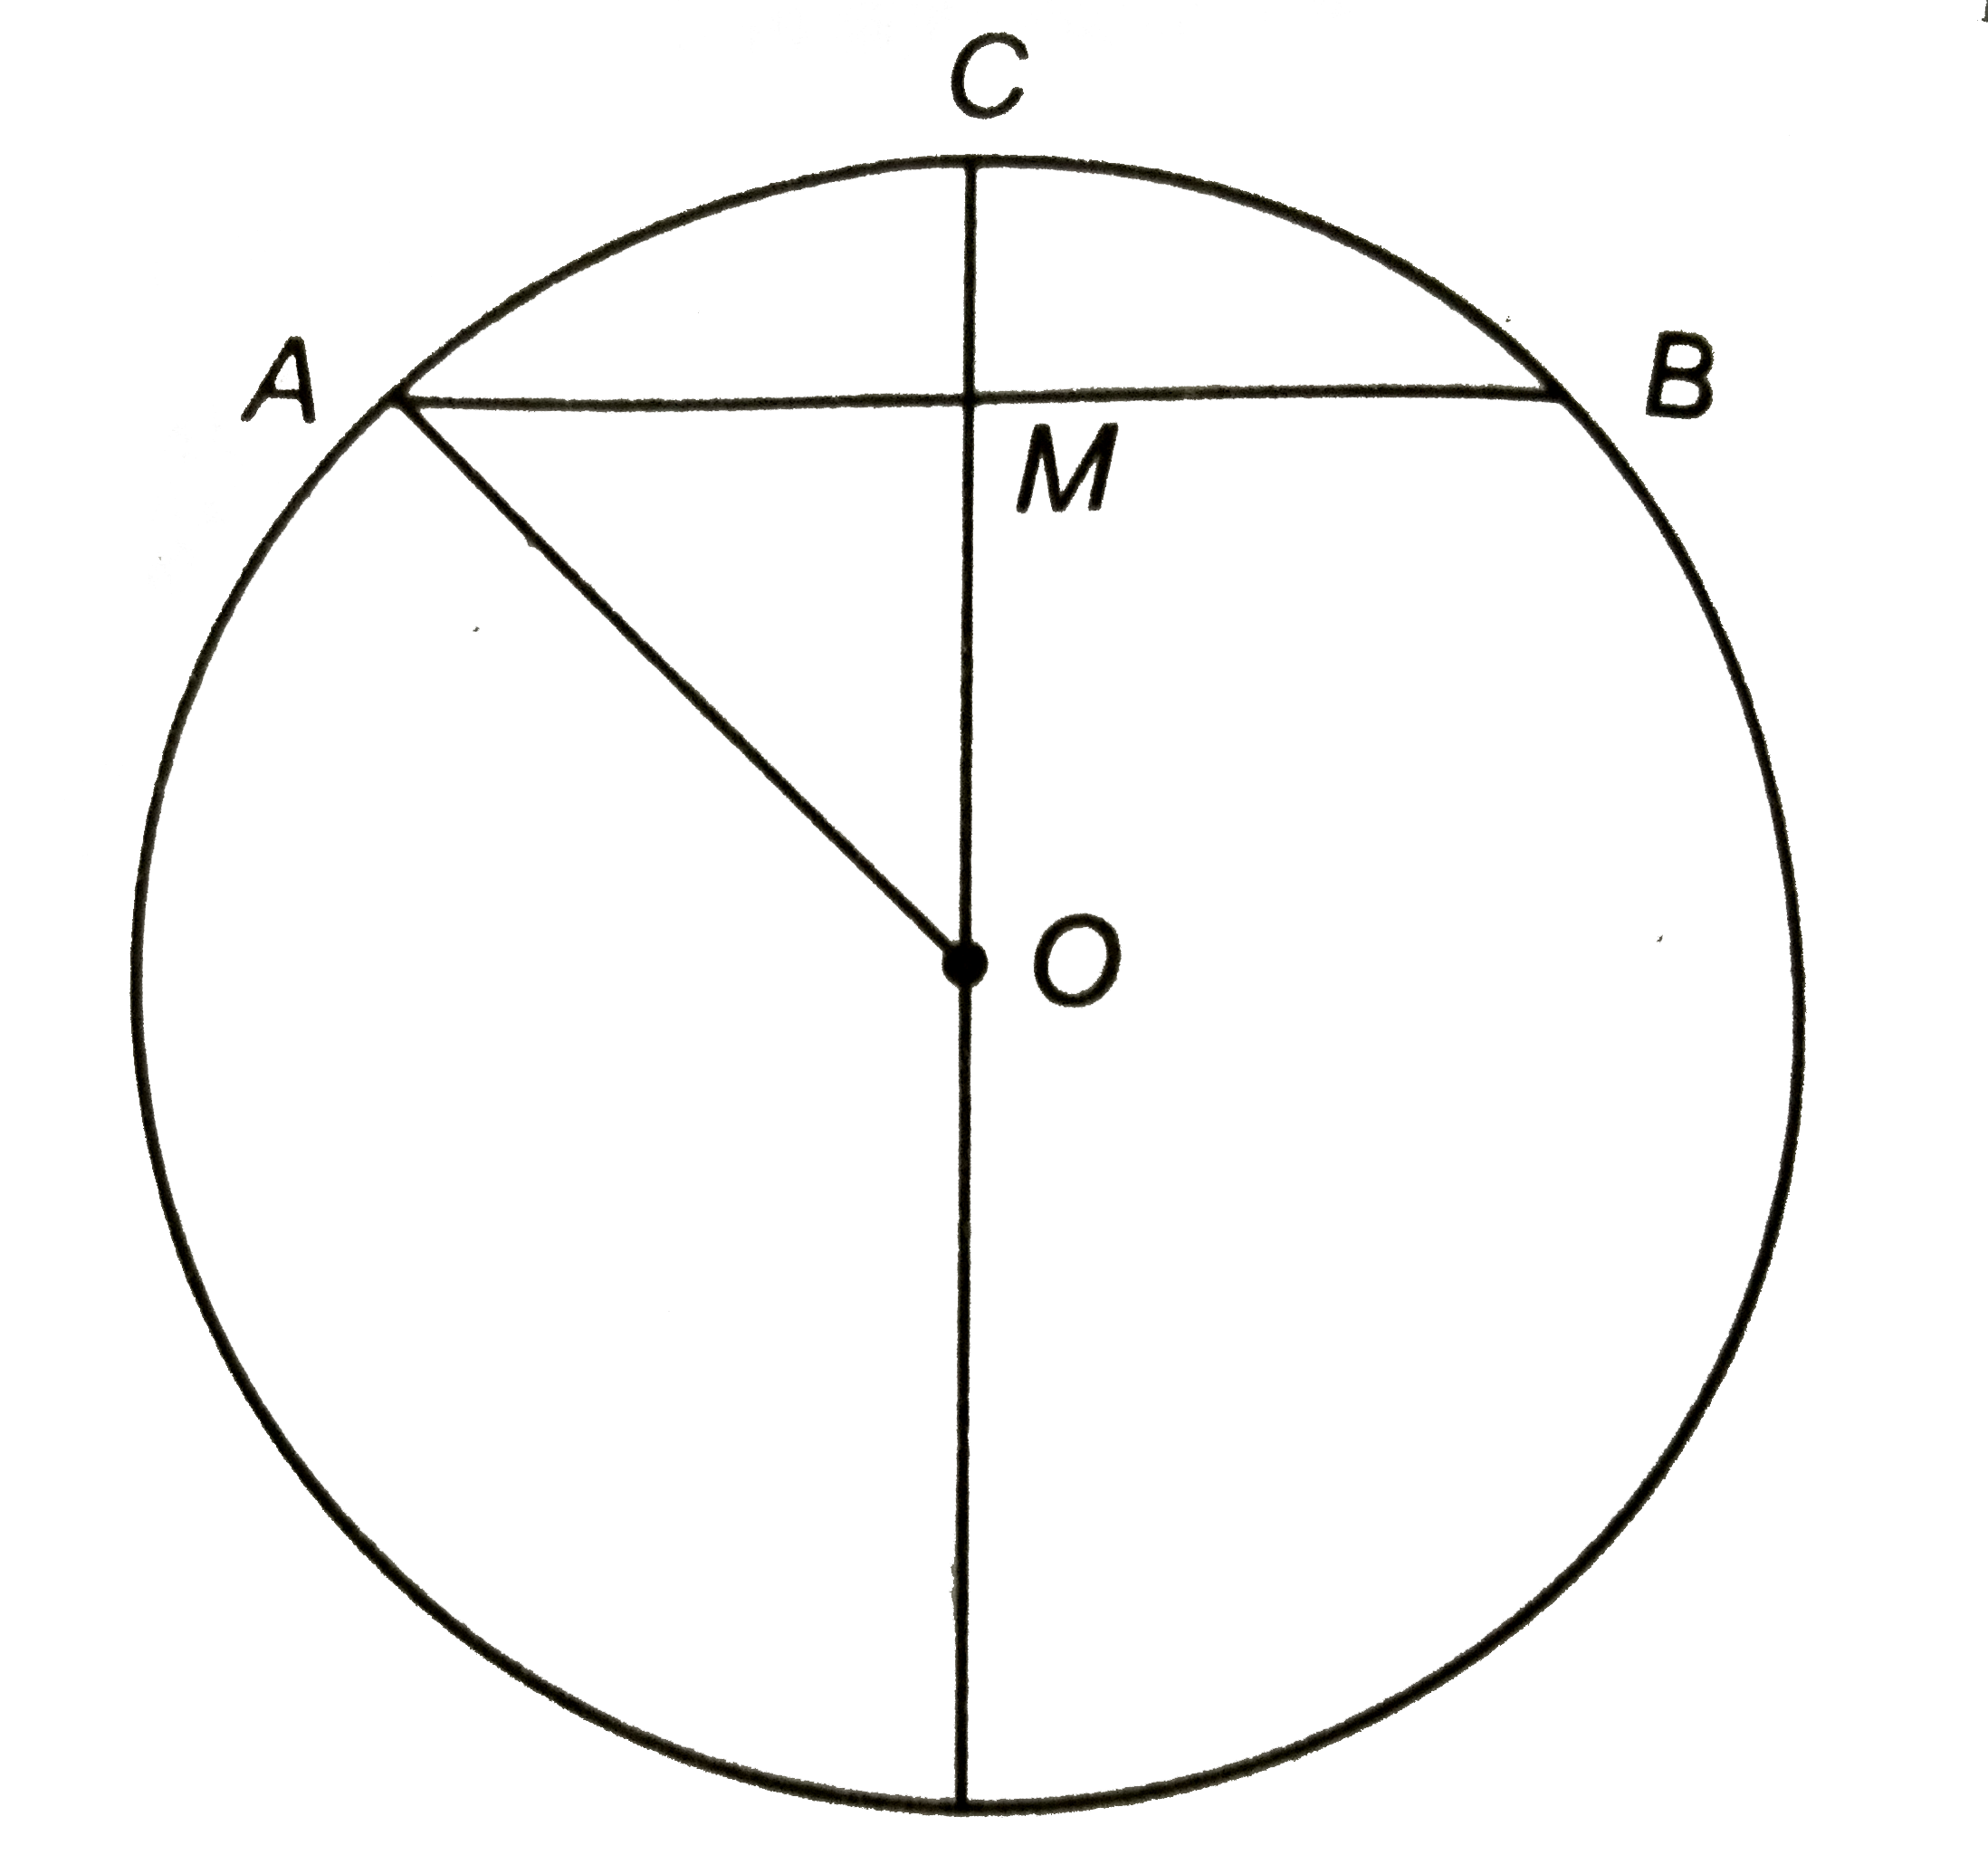 एक वृत्तीय चाप ACB की ऊँचाई 0.6 मीटर है | यदि वृत्त की त्रिज्या 3 मीटर है, तो संगत जीवा की लम्बाई ज्ञात कीजिए |